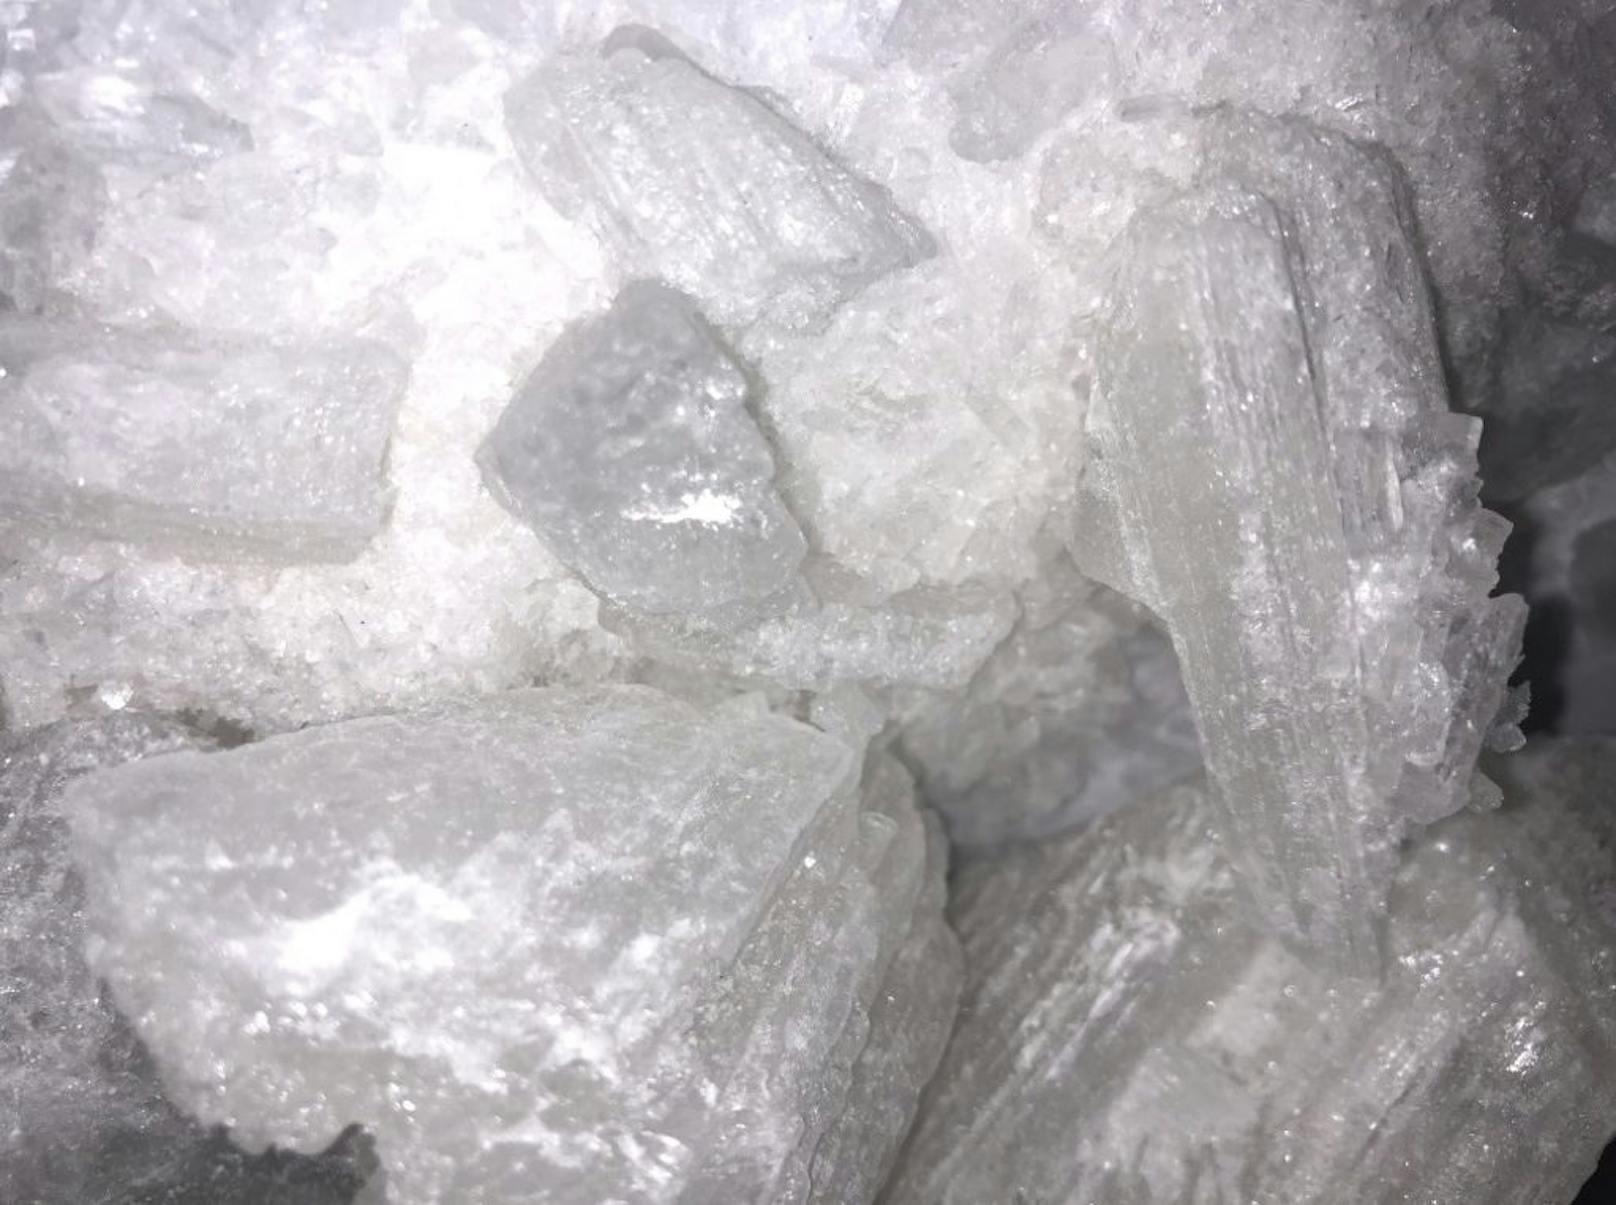 Insgesamt stellten die Beamten 624,4 Gramm Crystal Meth, 5,5 Gramm Kokain sowie eine fünfstellige Bargeldsumme sicher.